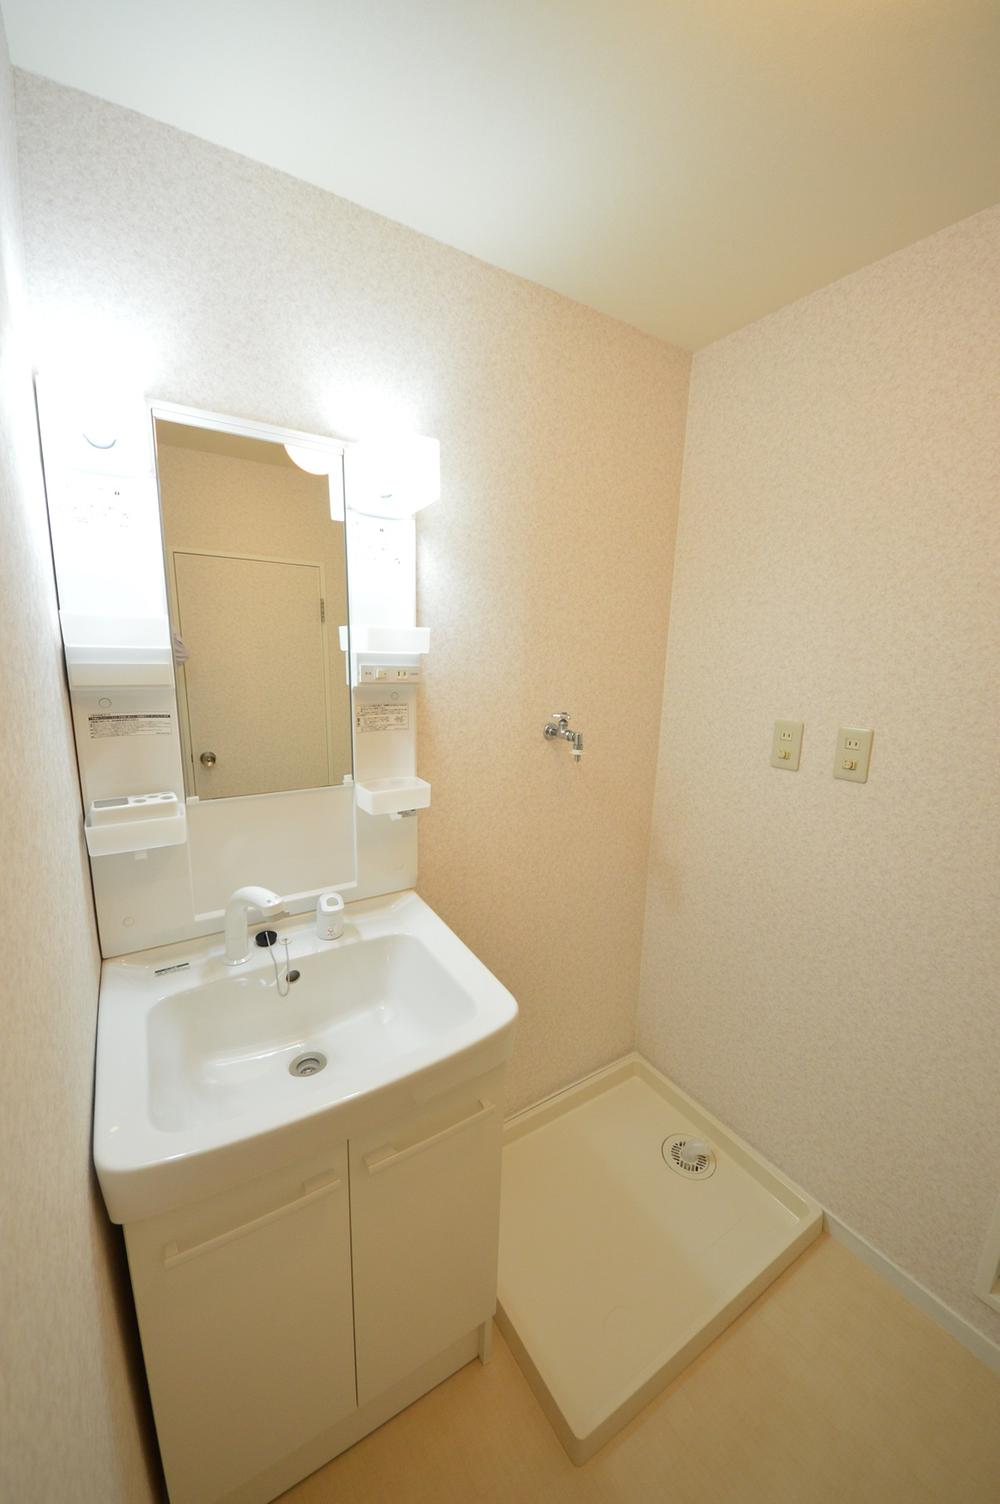 Wash basin, toilet. Indoor (July 2013) Shooting